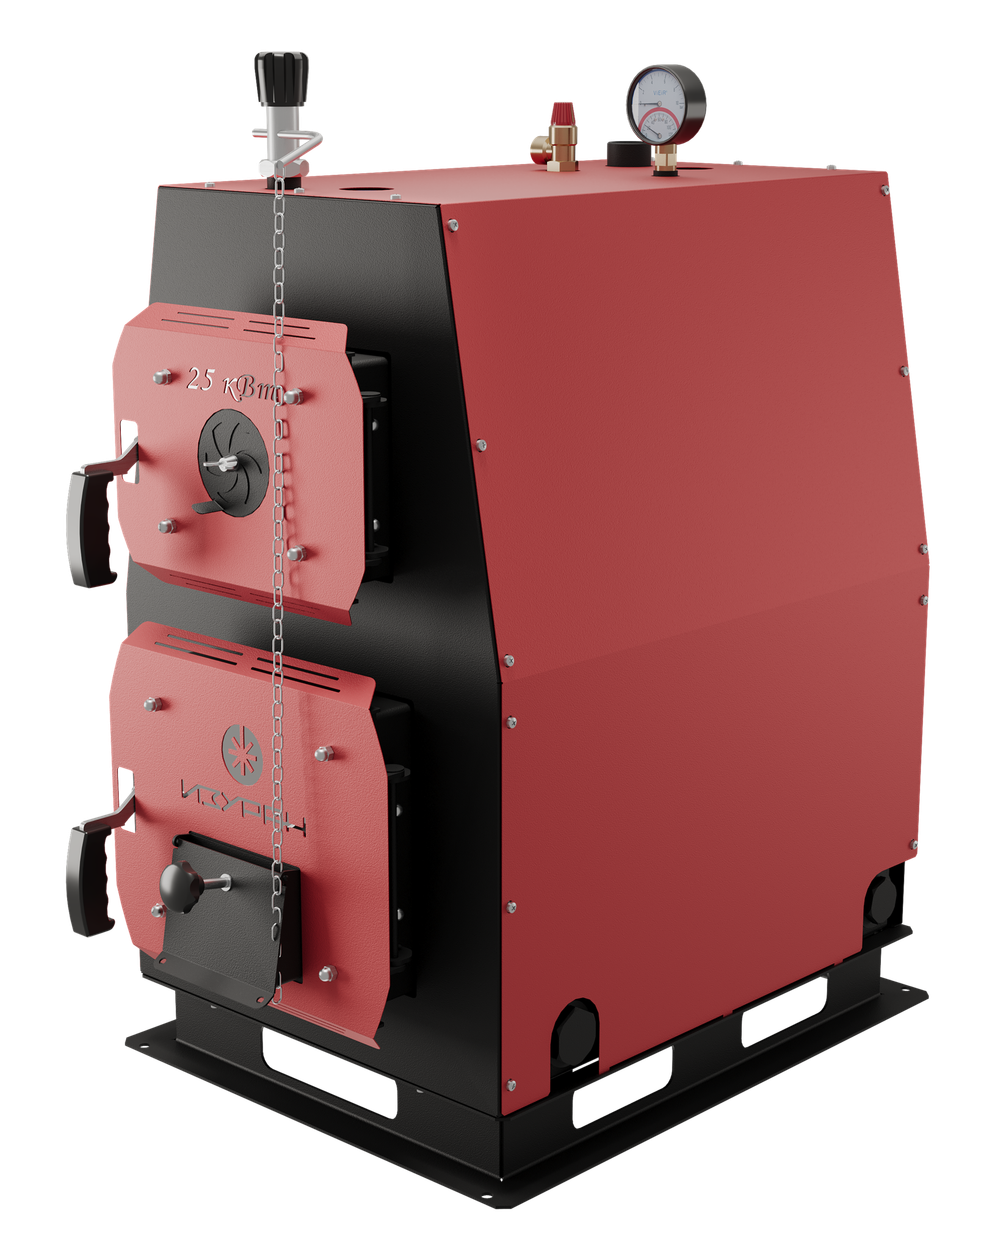 Твердотопливный котел длительного горения Изуран-100 в кожухе на 100 кВт. Отапливаемое помещение до 2700 куб.м. Производитель - Изуран